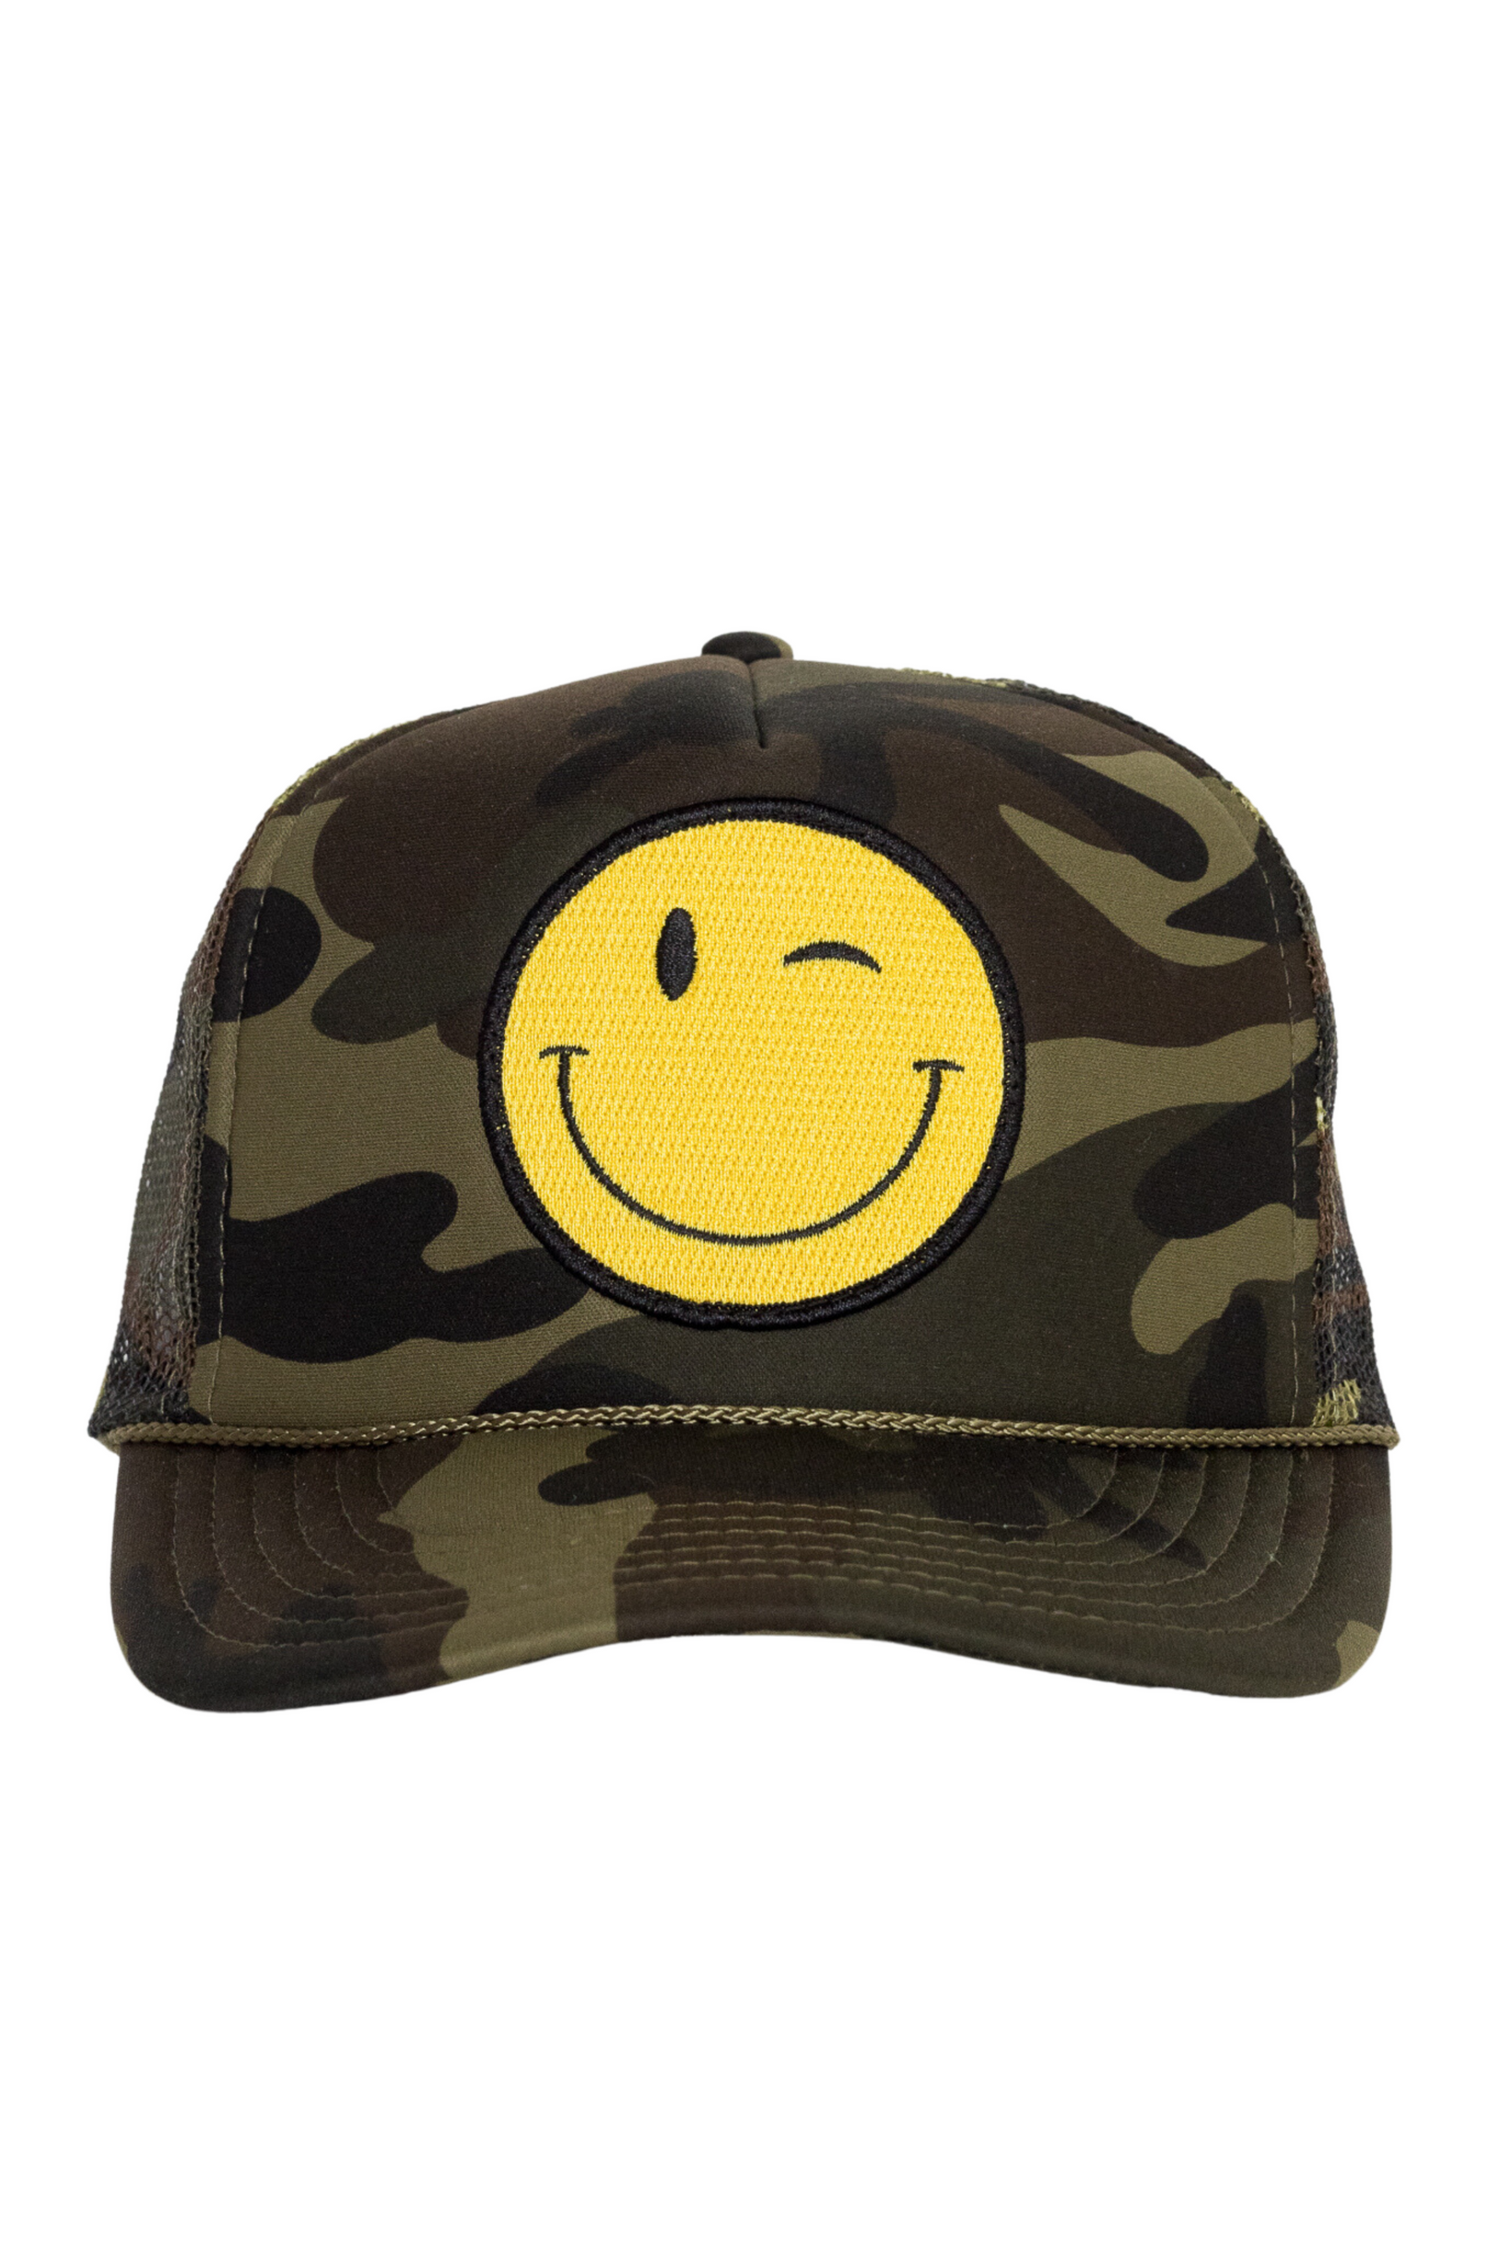 Winky Trucker Hat in Camo – Shop Friday Feelin